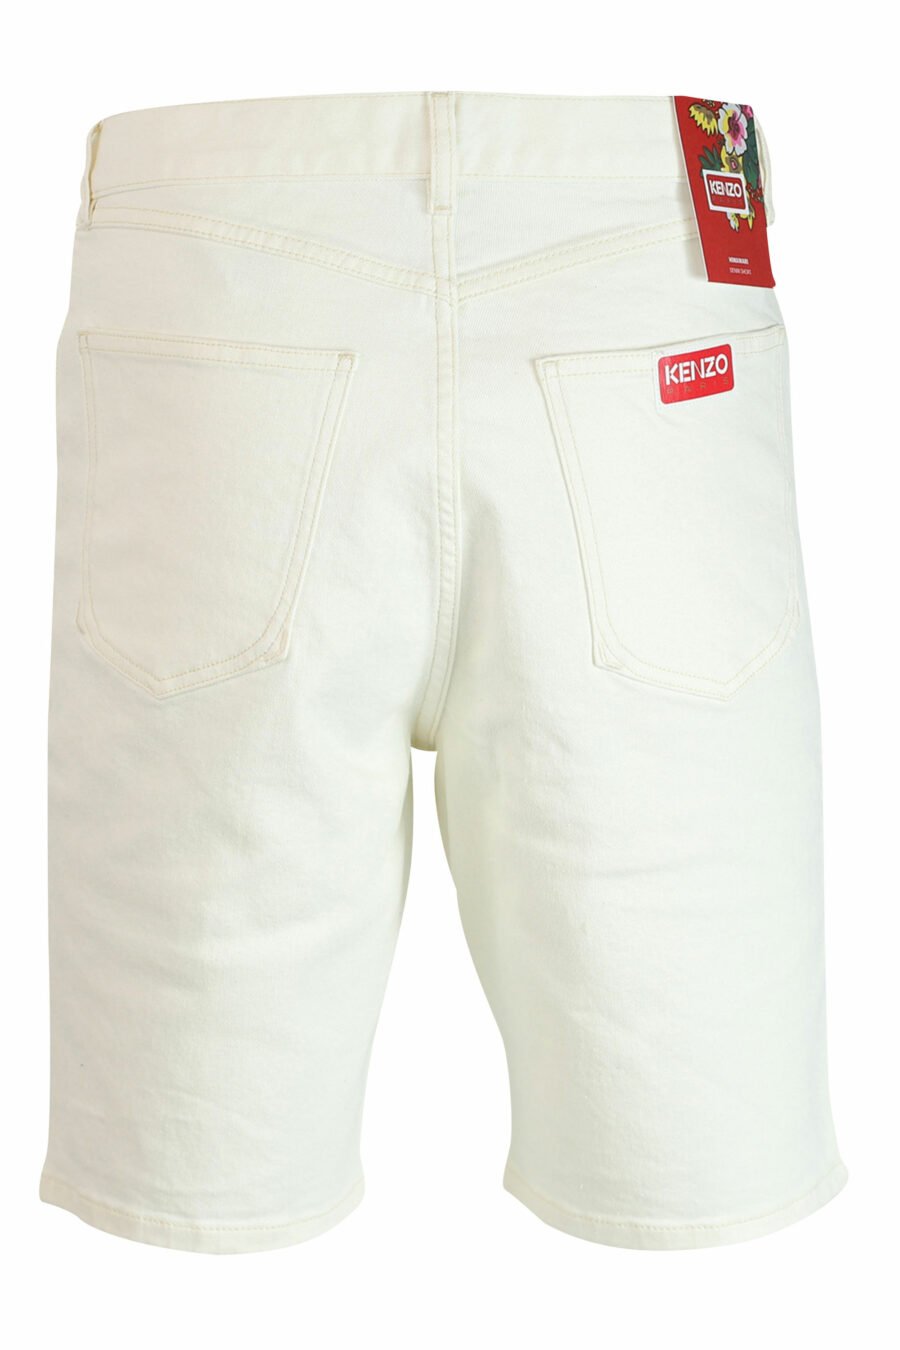 Pantalón vaquero blanco corto con minilogo - 3612230414884 3